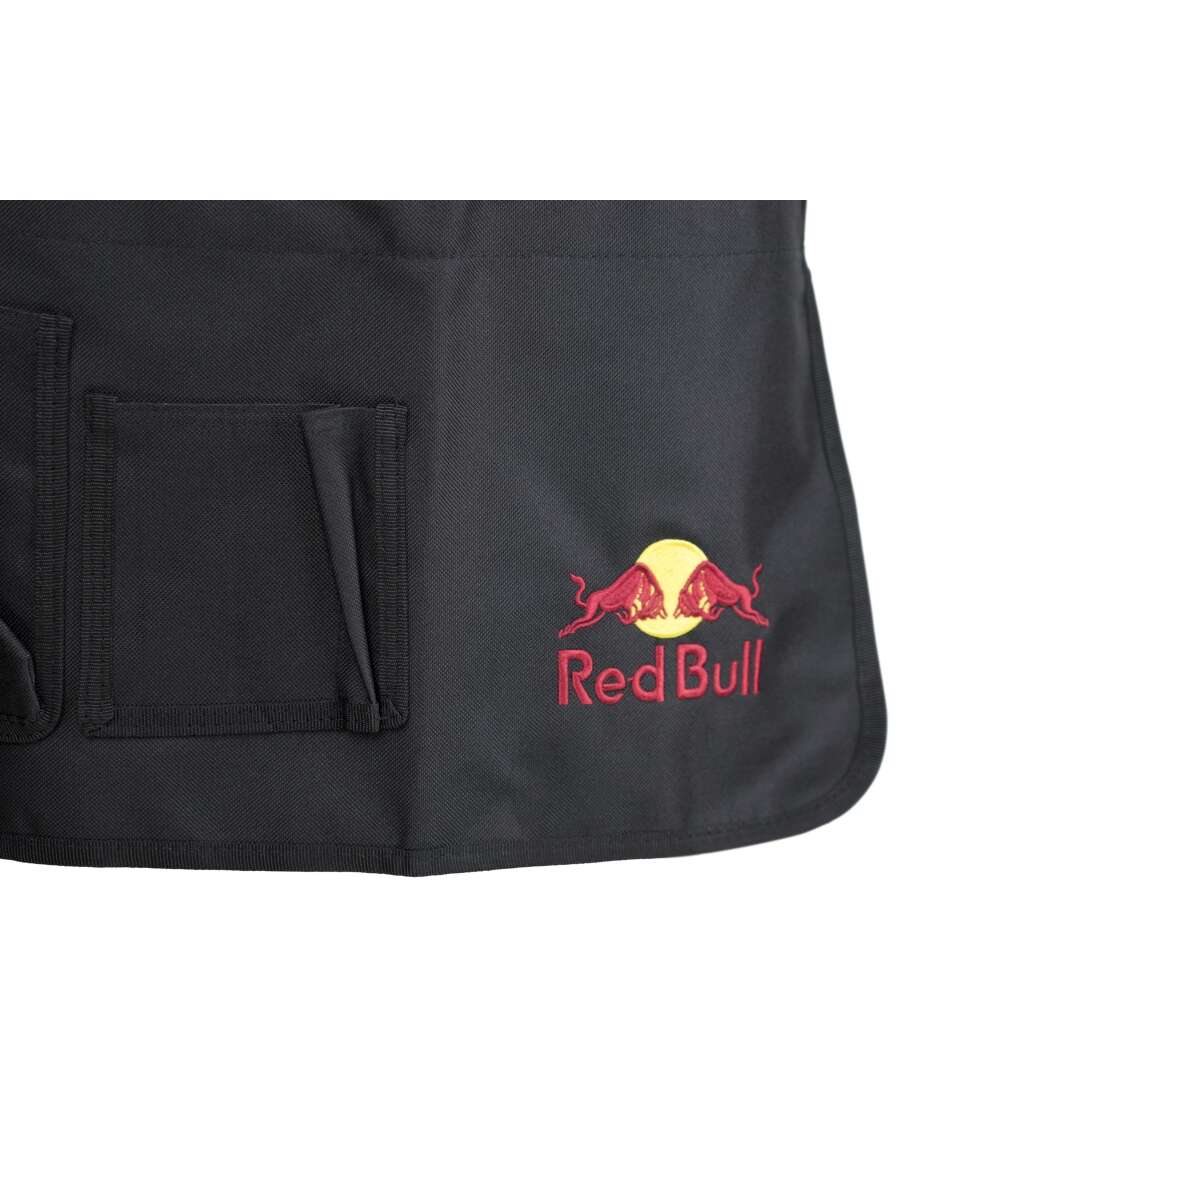 Red Bull Schürze Gastroschürze NEU OVP Bistro